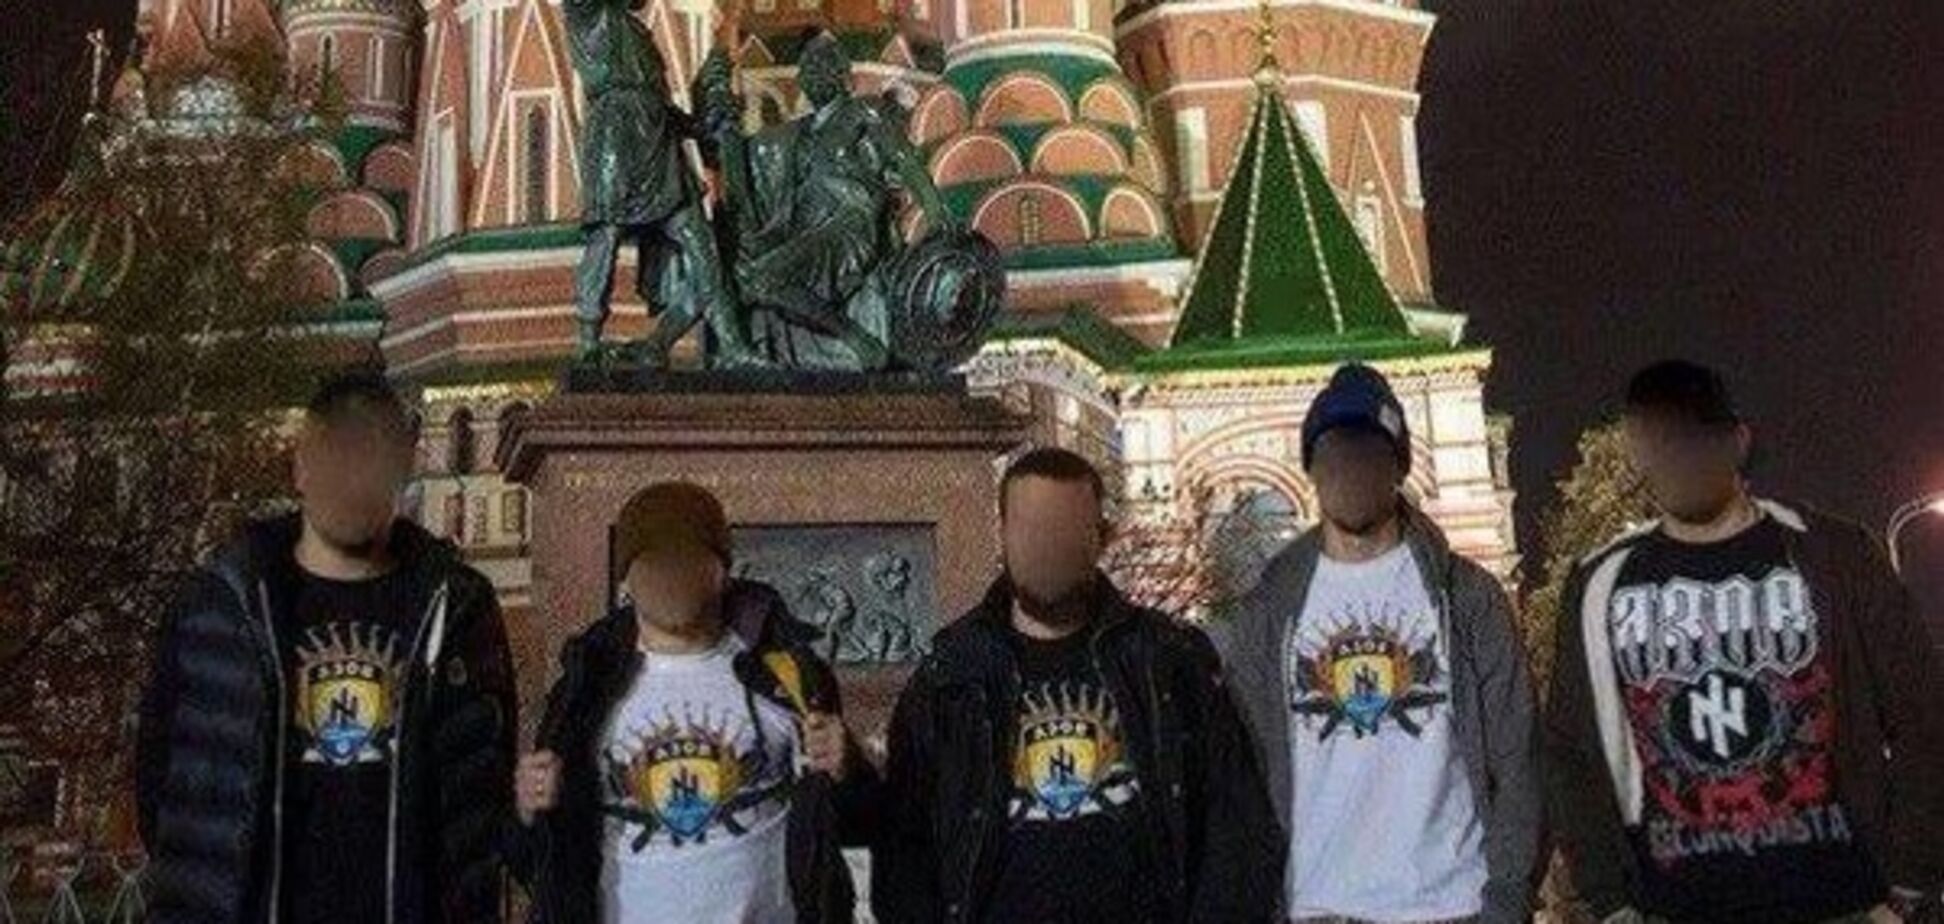 'Ми поруч!': 'карателі' в футболках 'Азова' передали привіт Путіну з Красної площі. Фотофакт